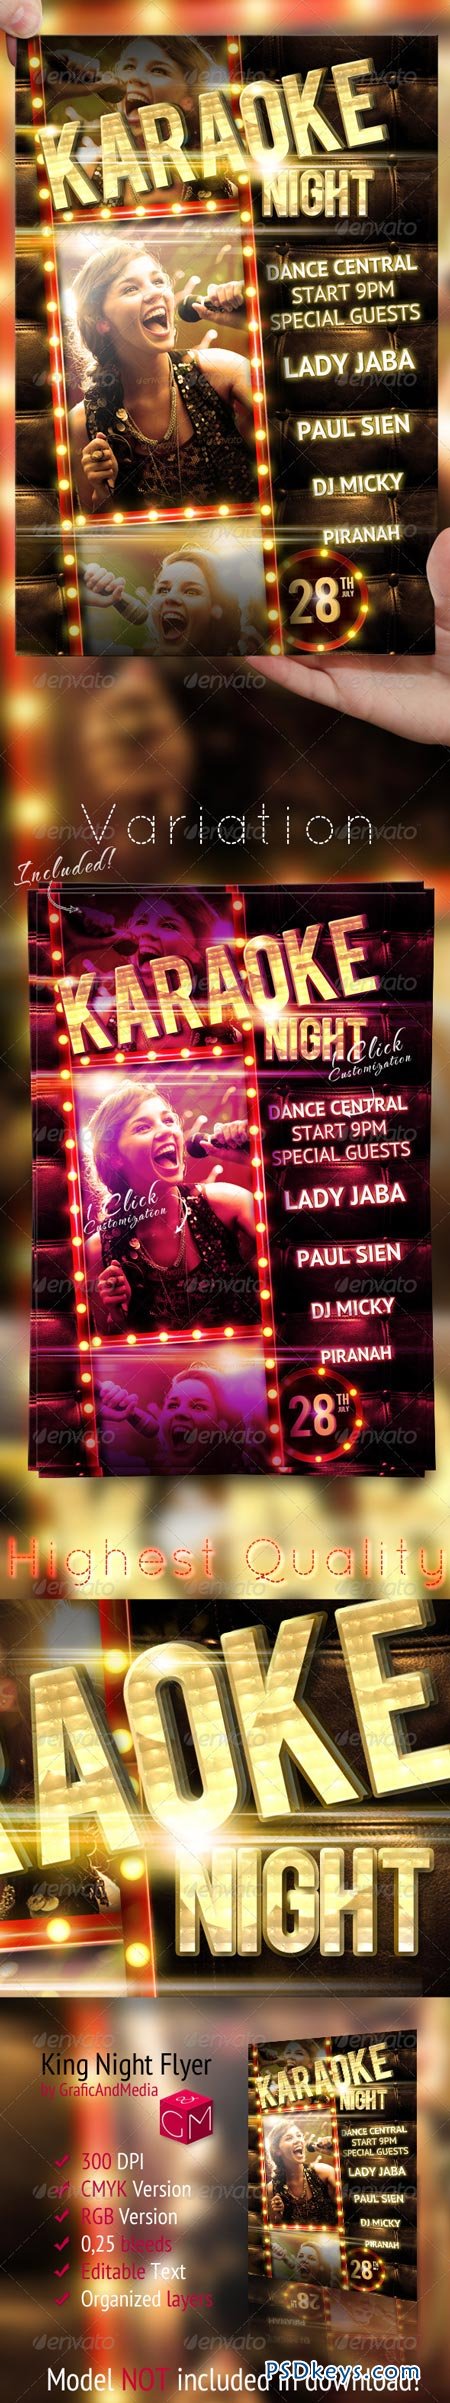 Karaoke Night Party Flyer Template 2592676